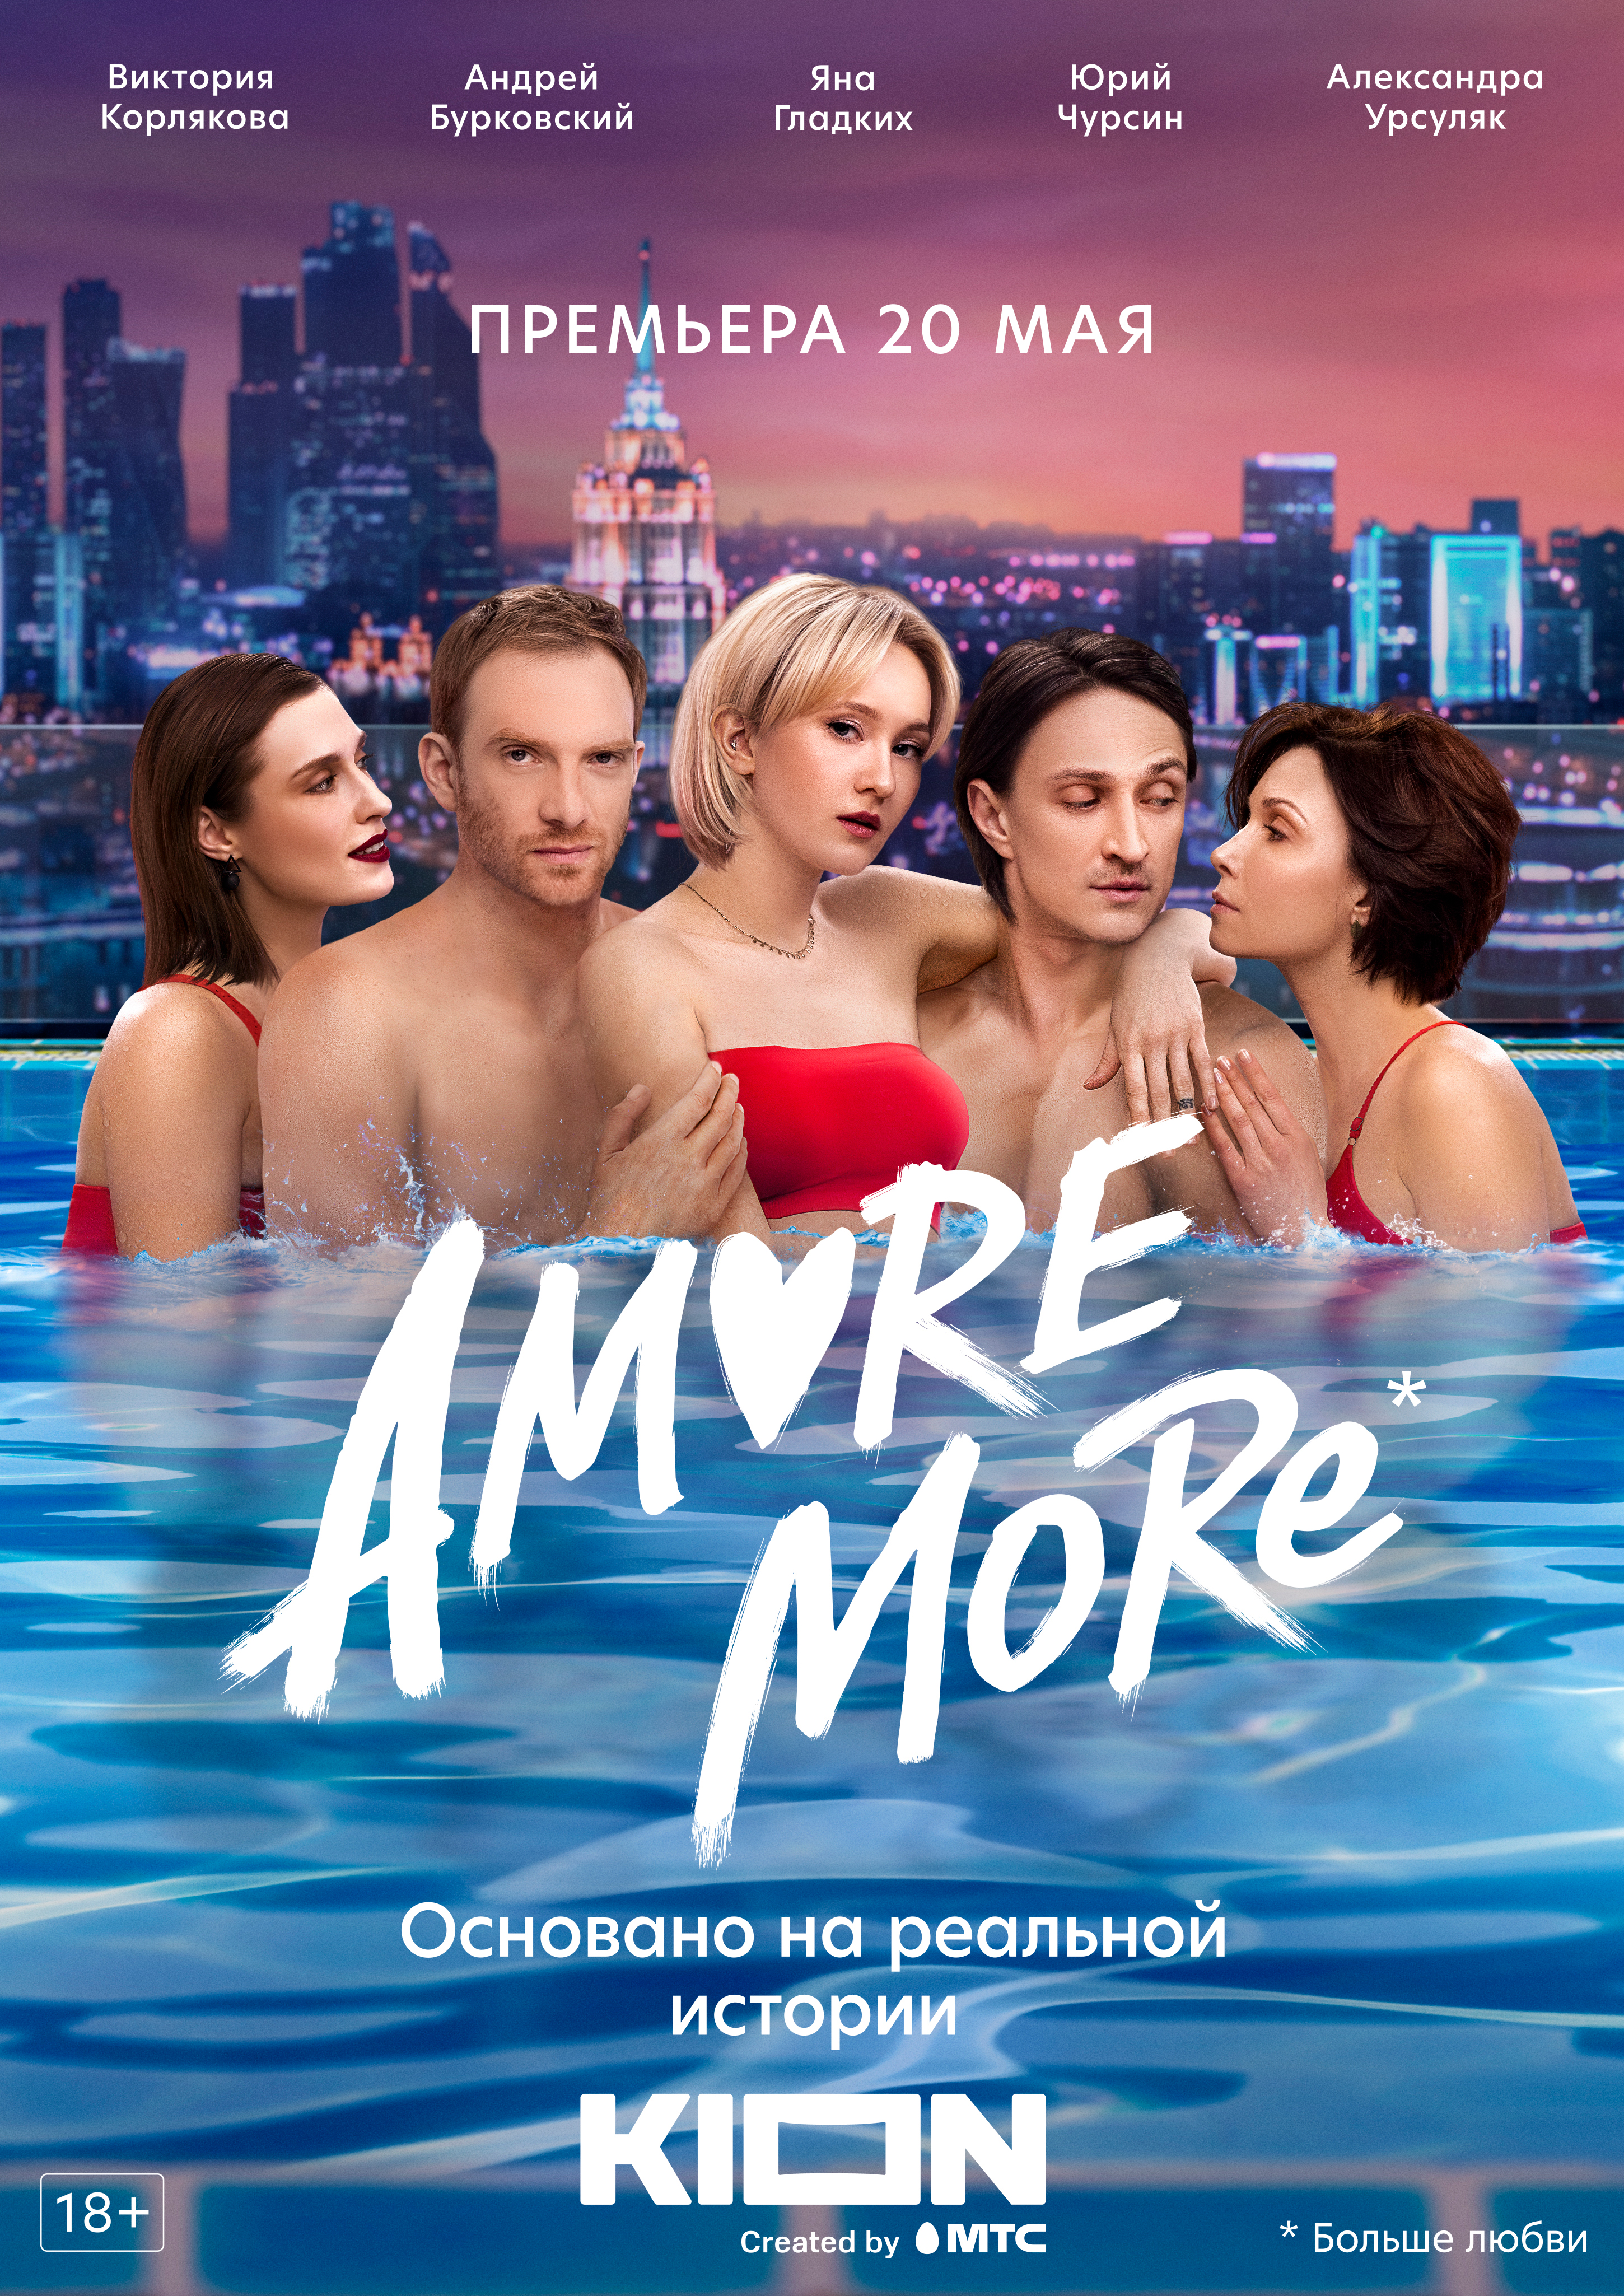 Смотрите все эротические сцены из Amore more